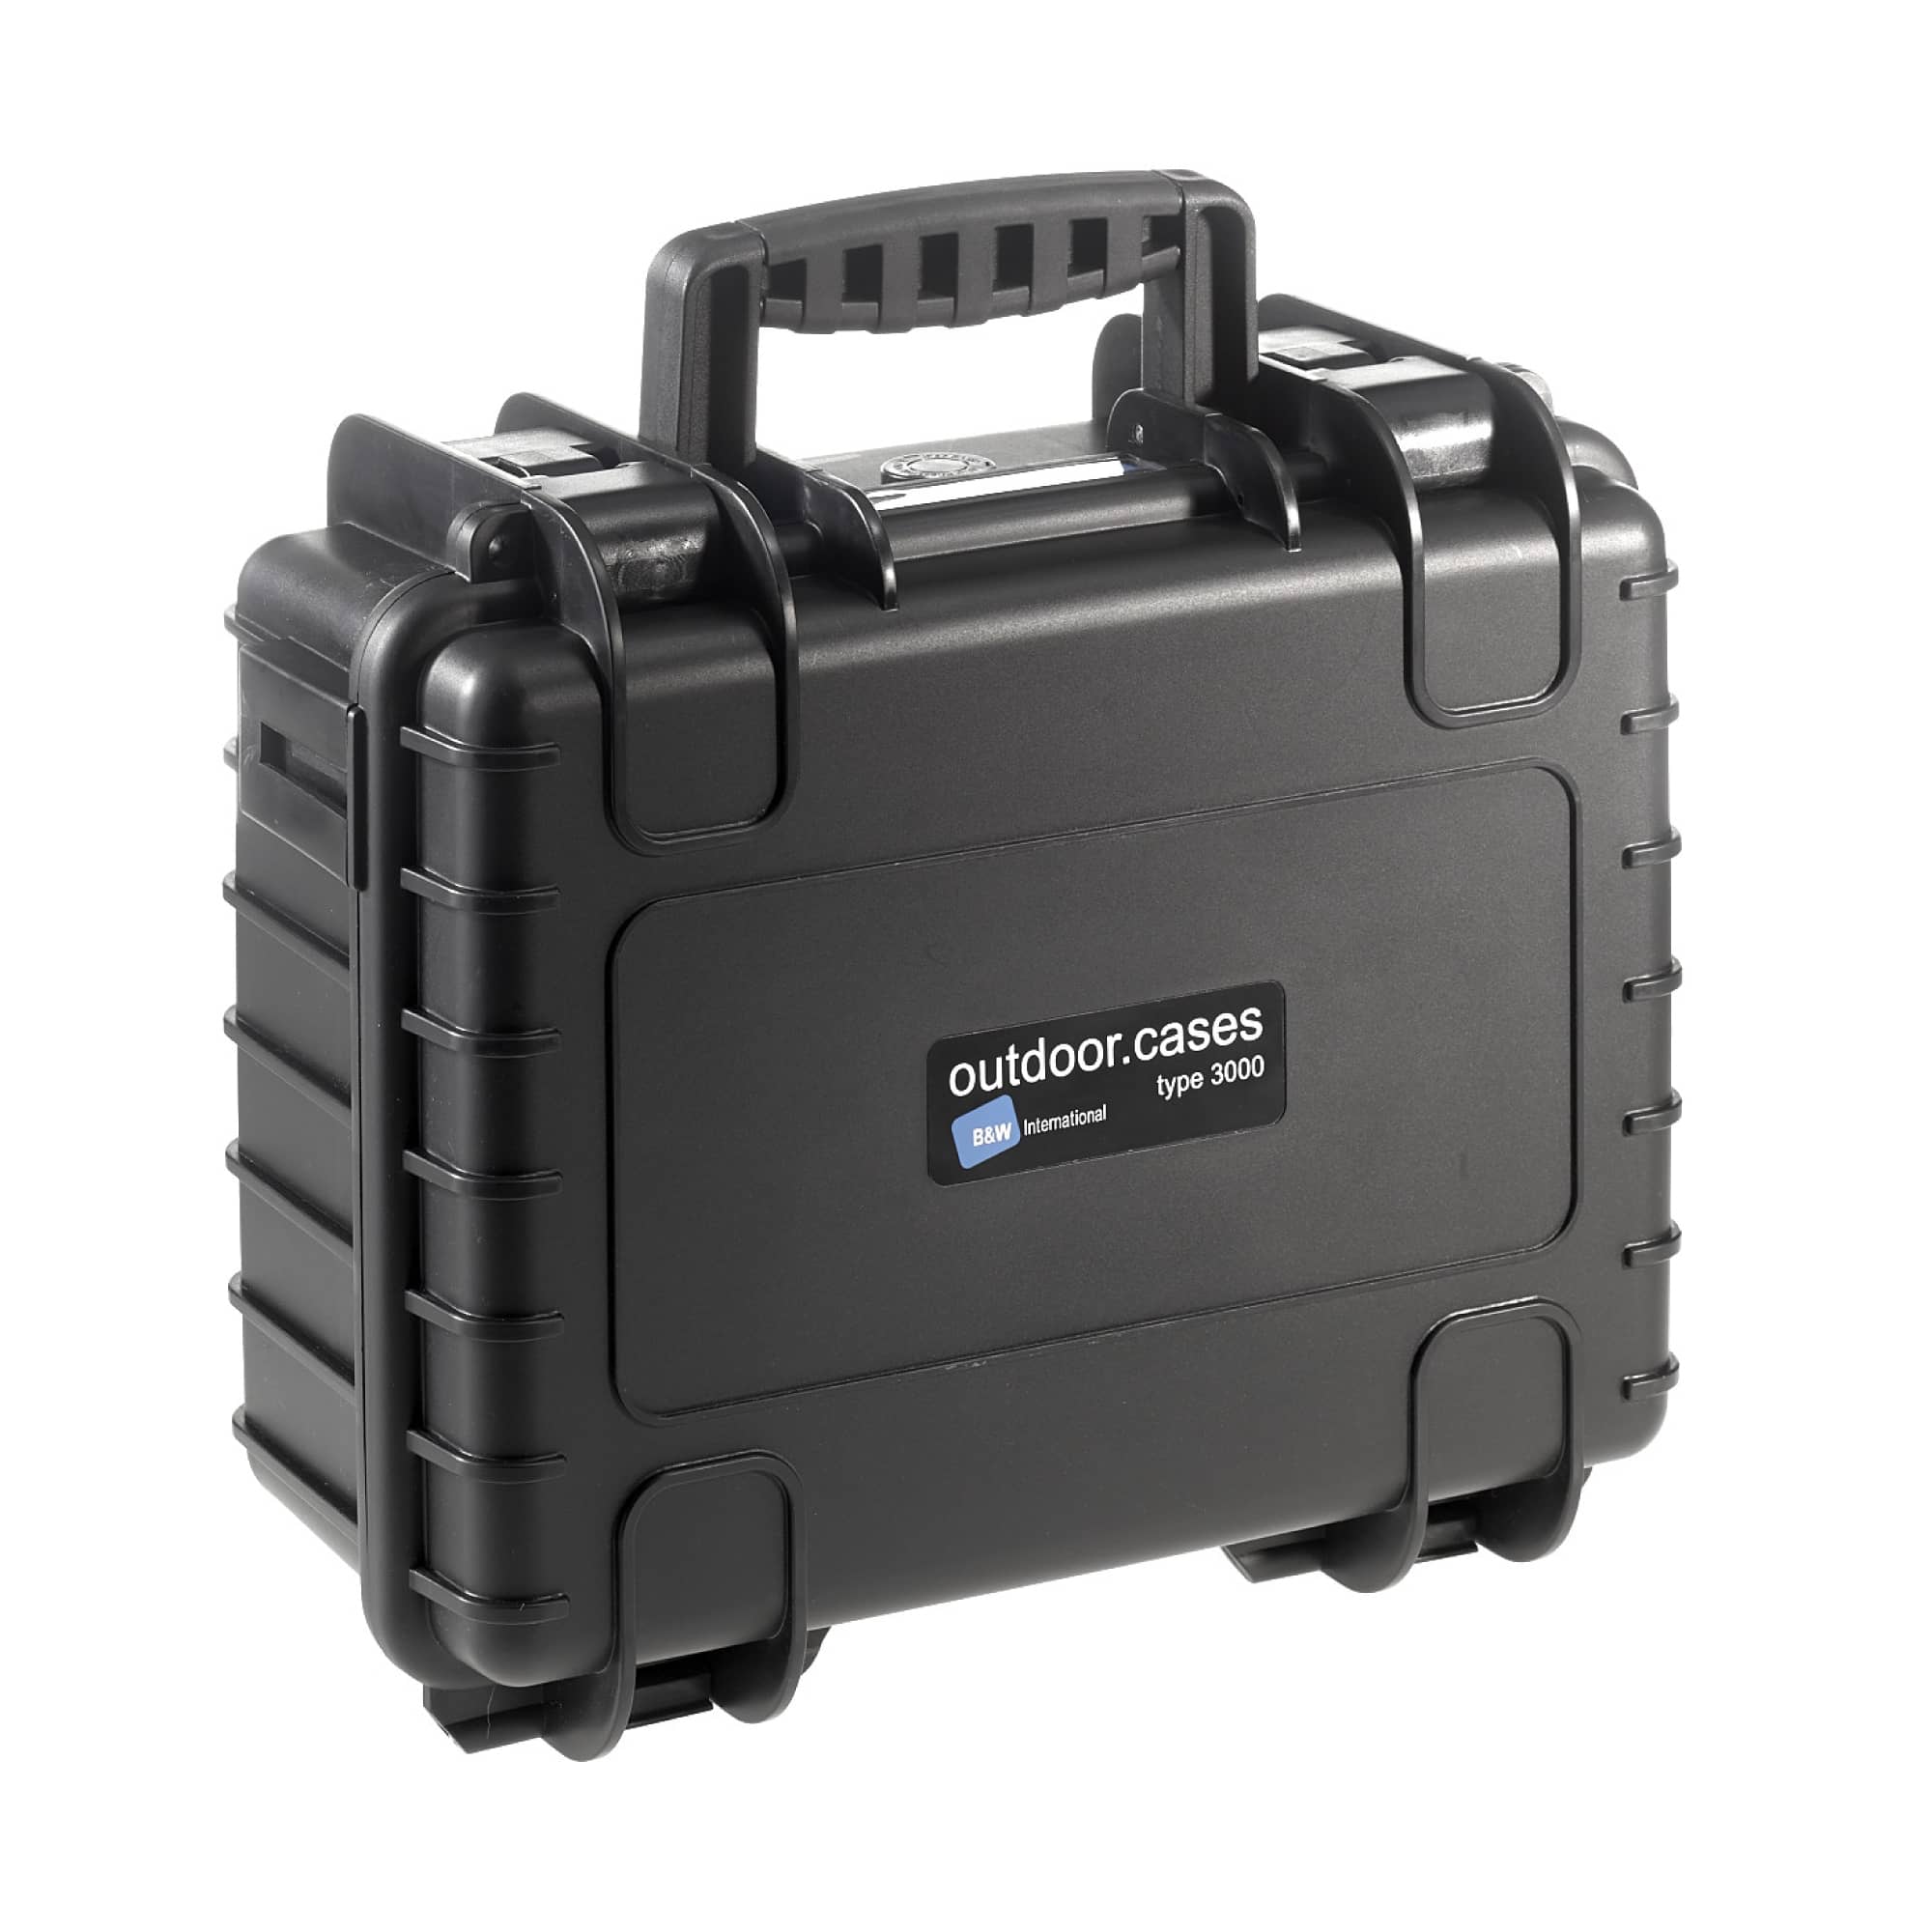 B&W Outdoor Case Typ 3000 in schwarz mit variabler Facheinteilung (RPD)